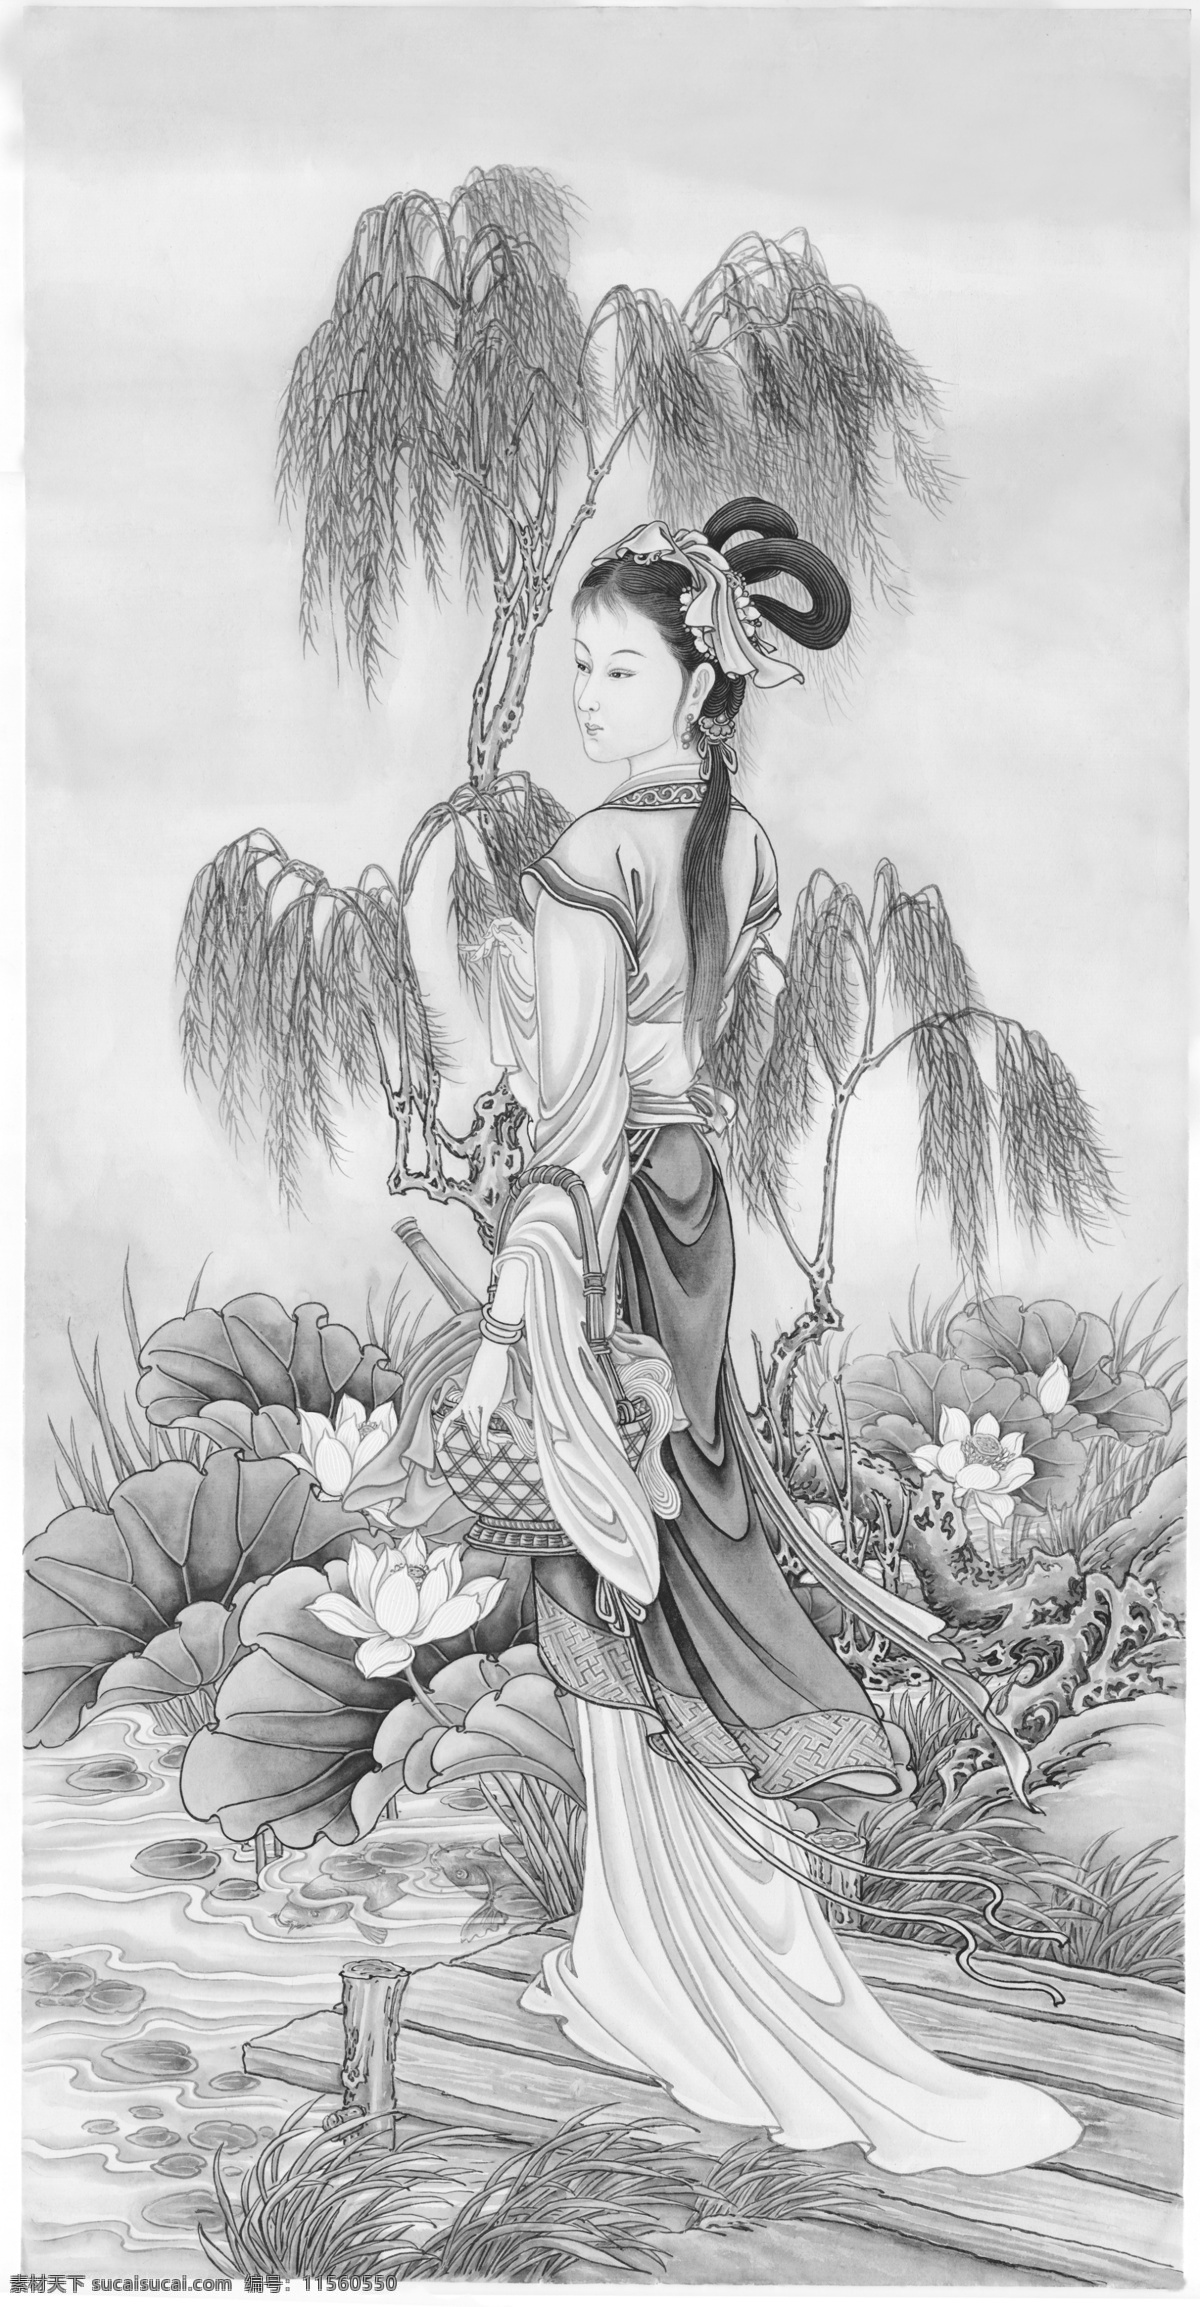 西施浣纱 中国文化 仕女 人物设计 苏绣 苏州 刺绣 打印 底 图 绘画书法 文化艺术